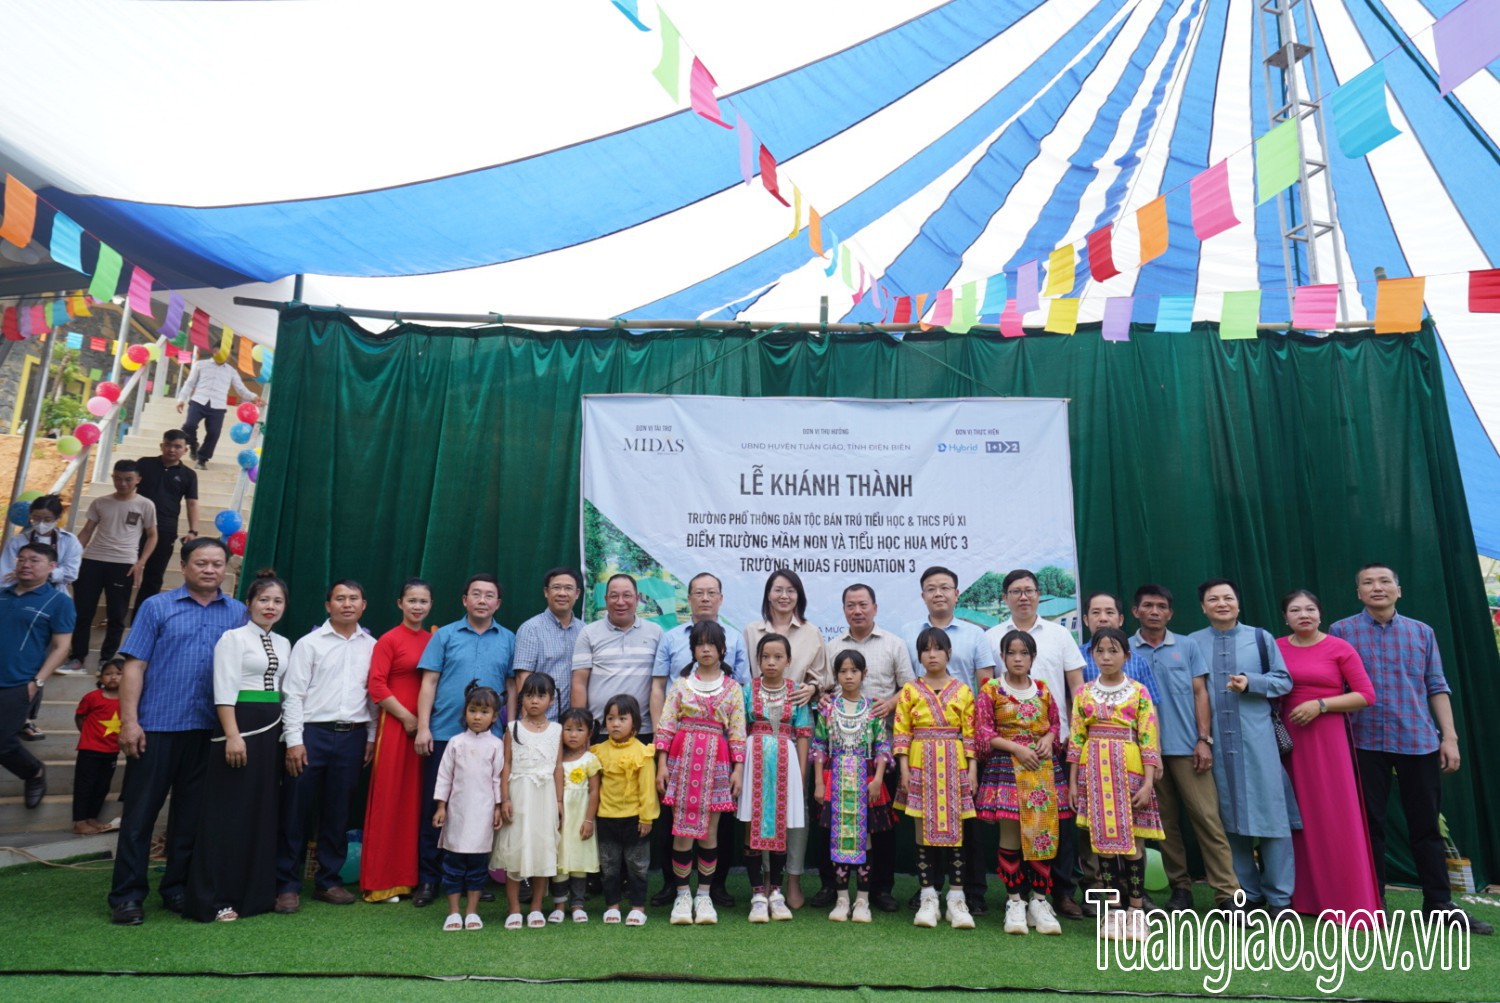 Huyện Tuần Giáo tổ chức lễ nghiệm thu, khánh thành Điểm trường Mầm Non — Tiểu học và THCS Pú Xi Hua Mức 3, xã Pú Xi